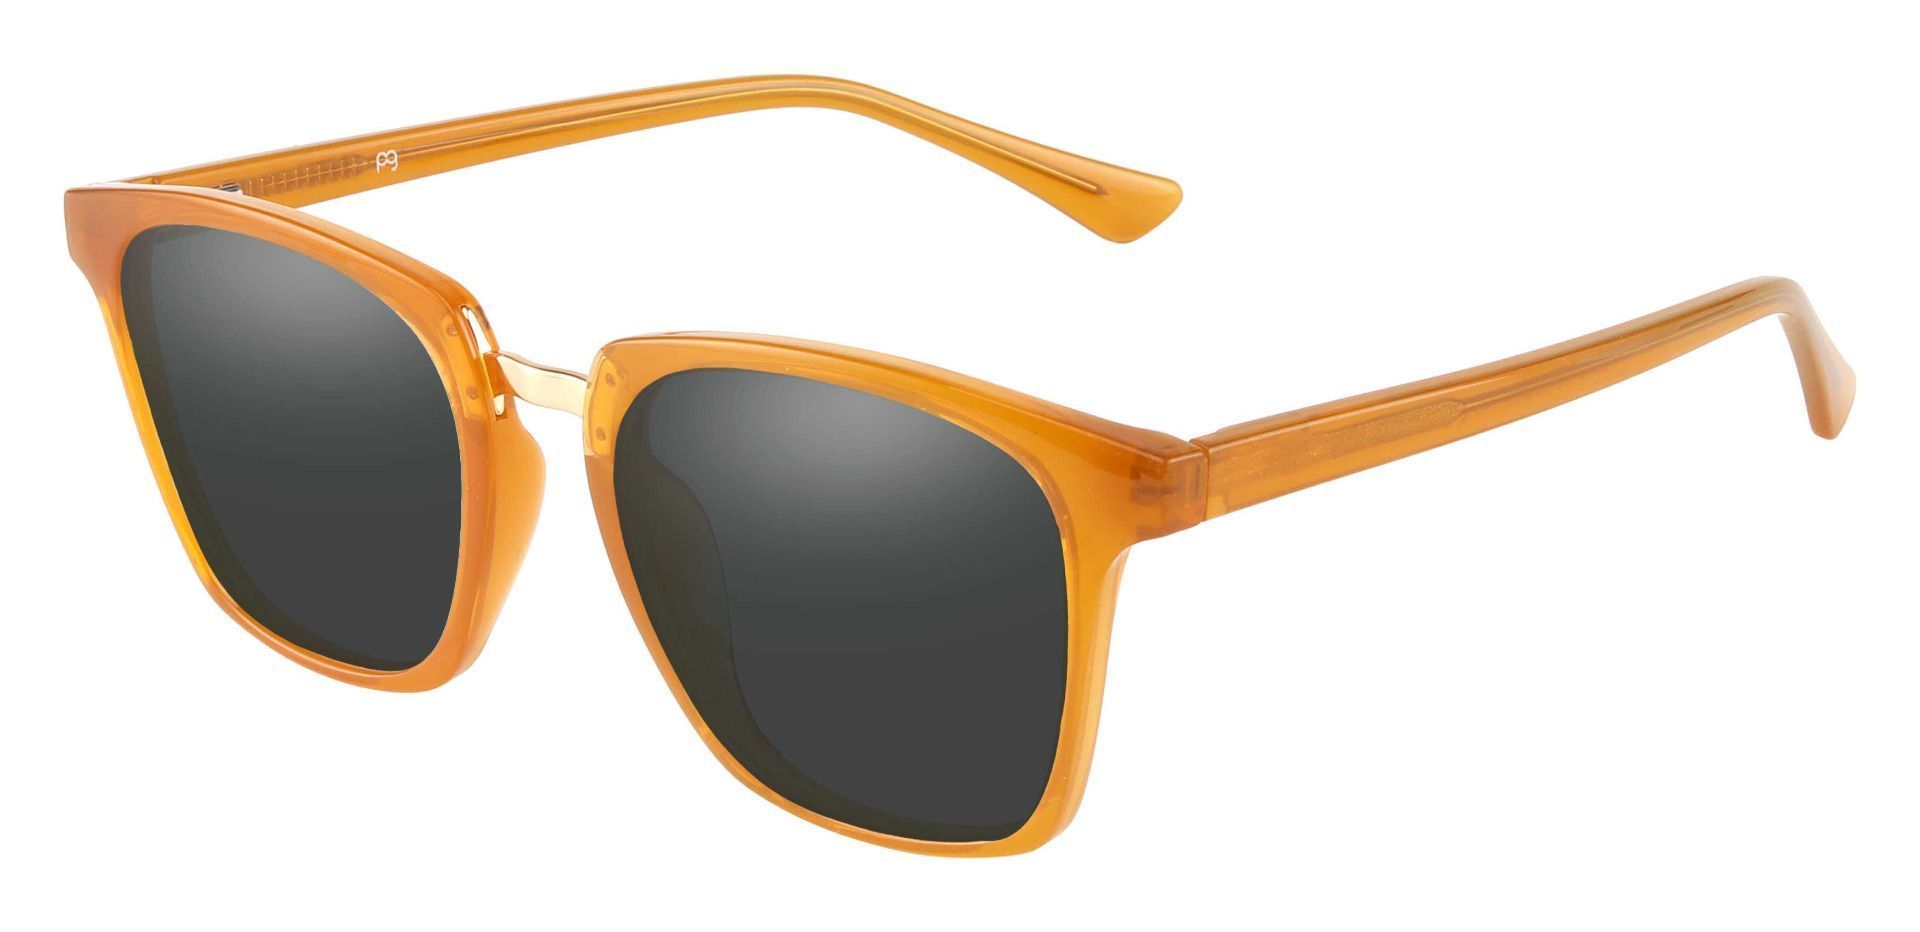 Delta Square Prescription Sunglasses - Orange Frame With Gray Lenses